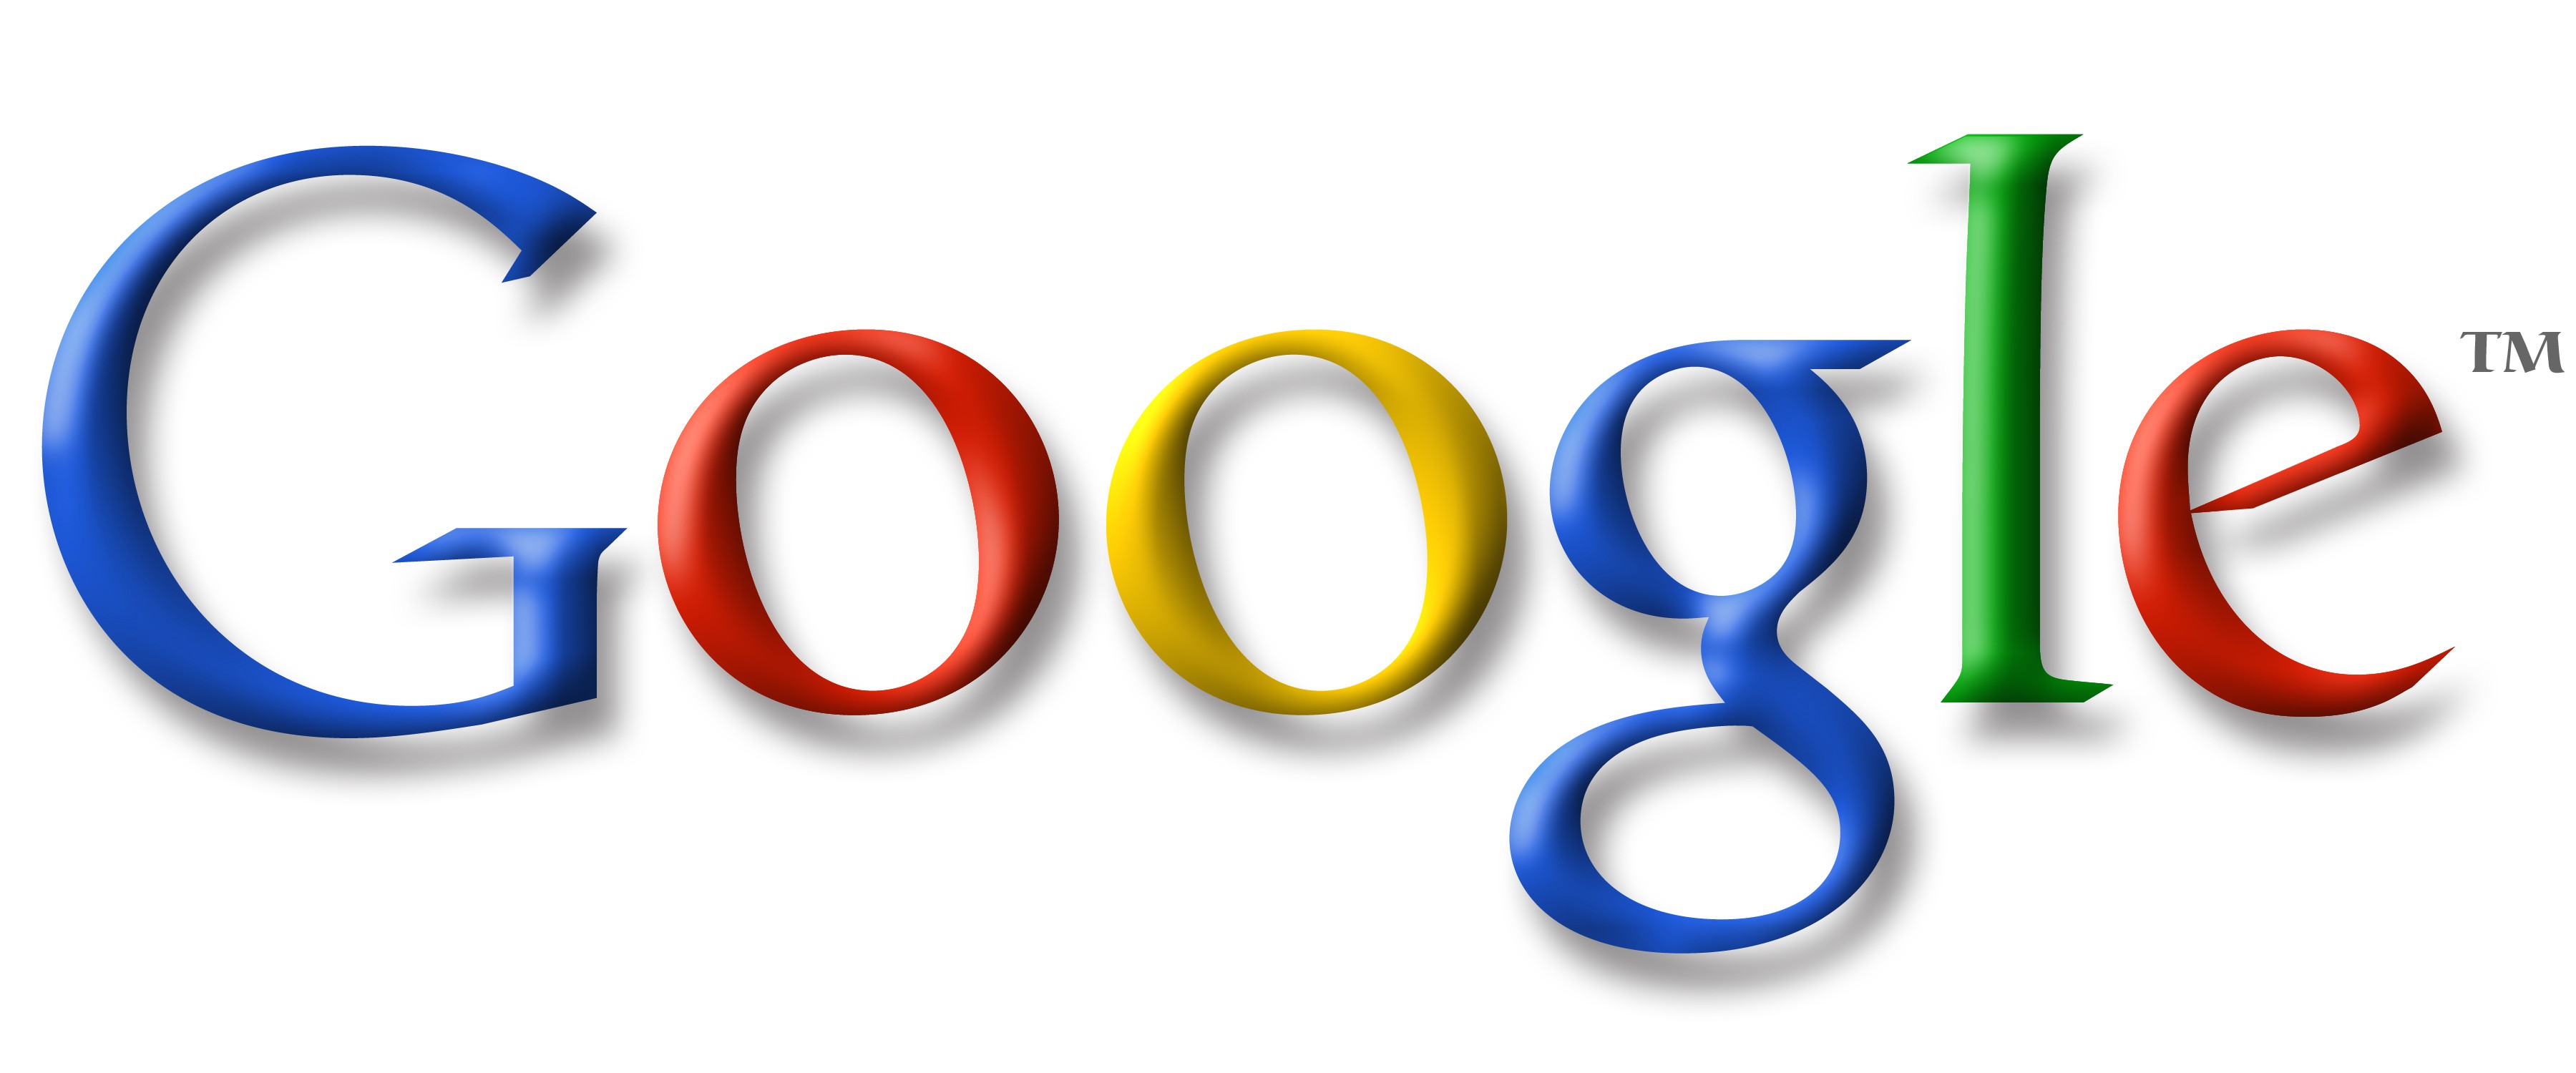 Google-logo1.jpg?width=320